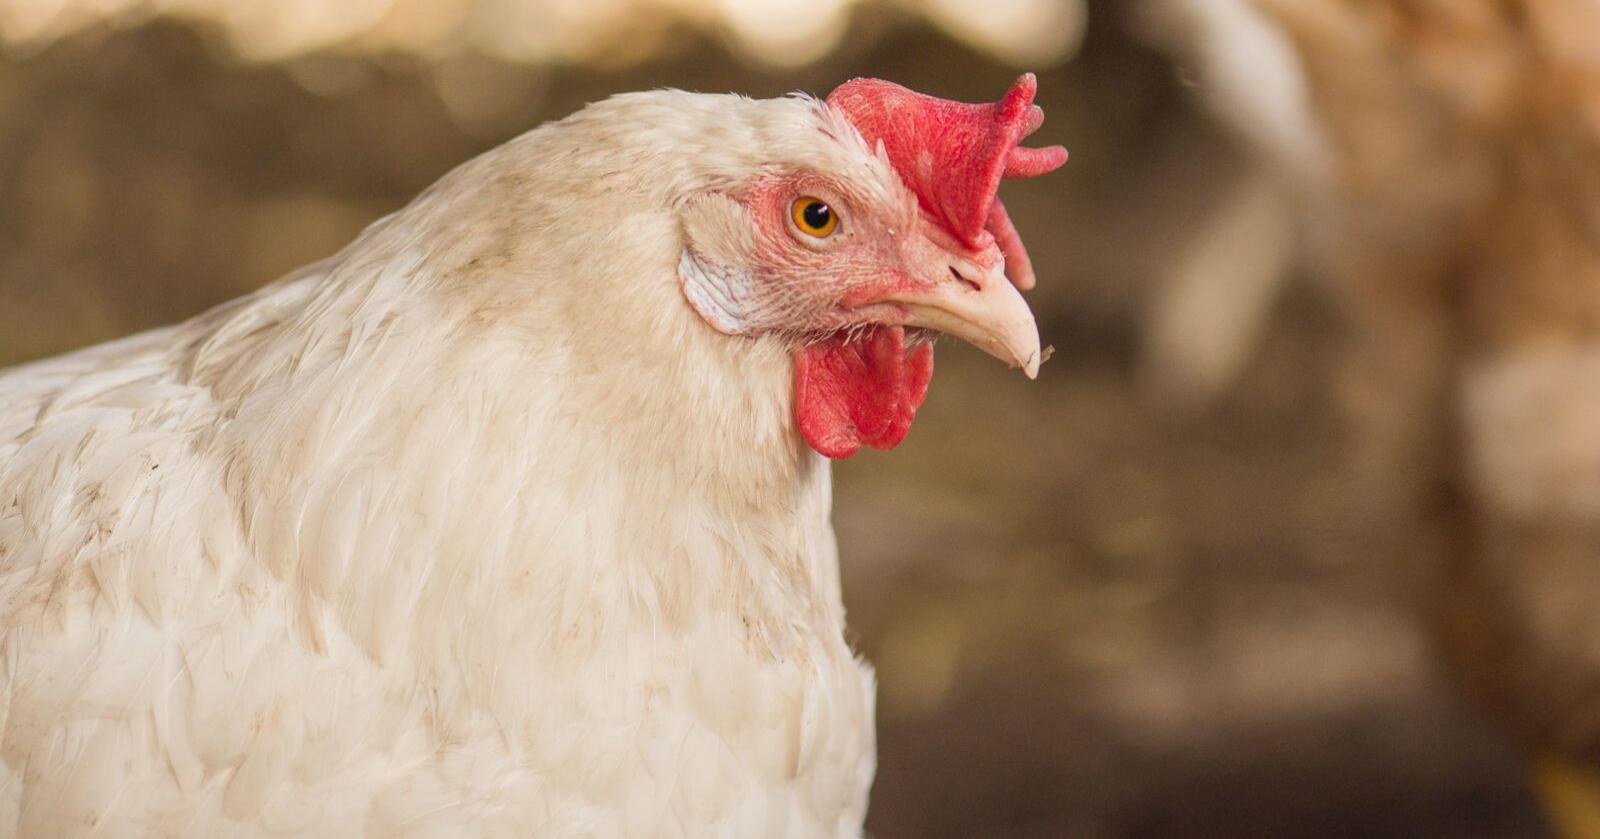 Eggprodusent: Verpehønene og andre produksjonsdyr trenger både politikere og bransjeledere som ser dem og taler deres sak, og som ikke kun er opptatt av bondens økonomi, skriver innsenderen. Illustrasjonsfoto: Mostphotos 